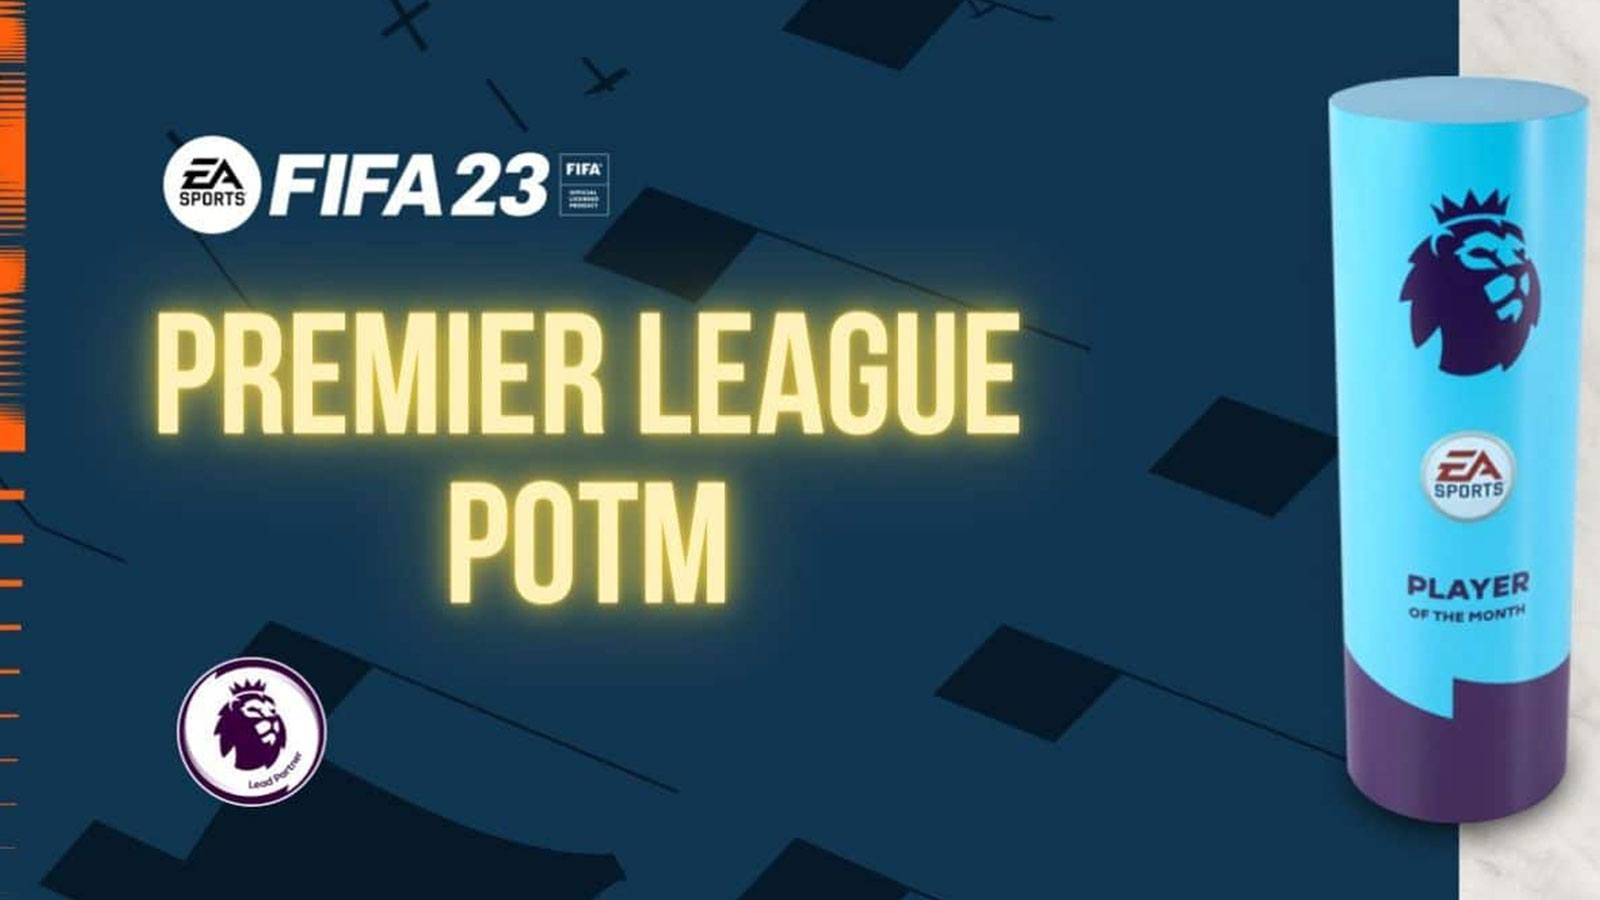 POTM Premier League FIFA 23